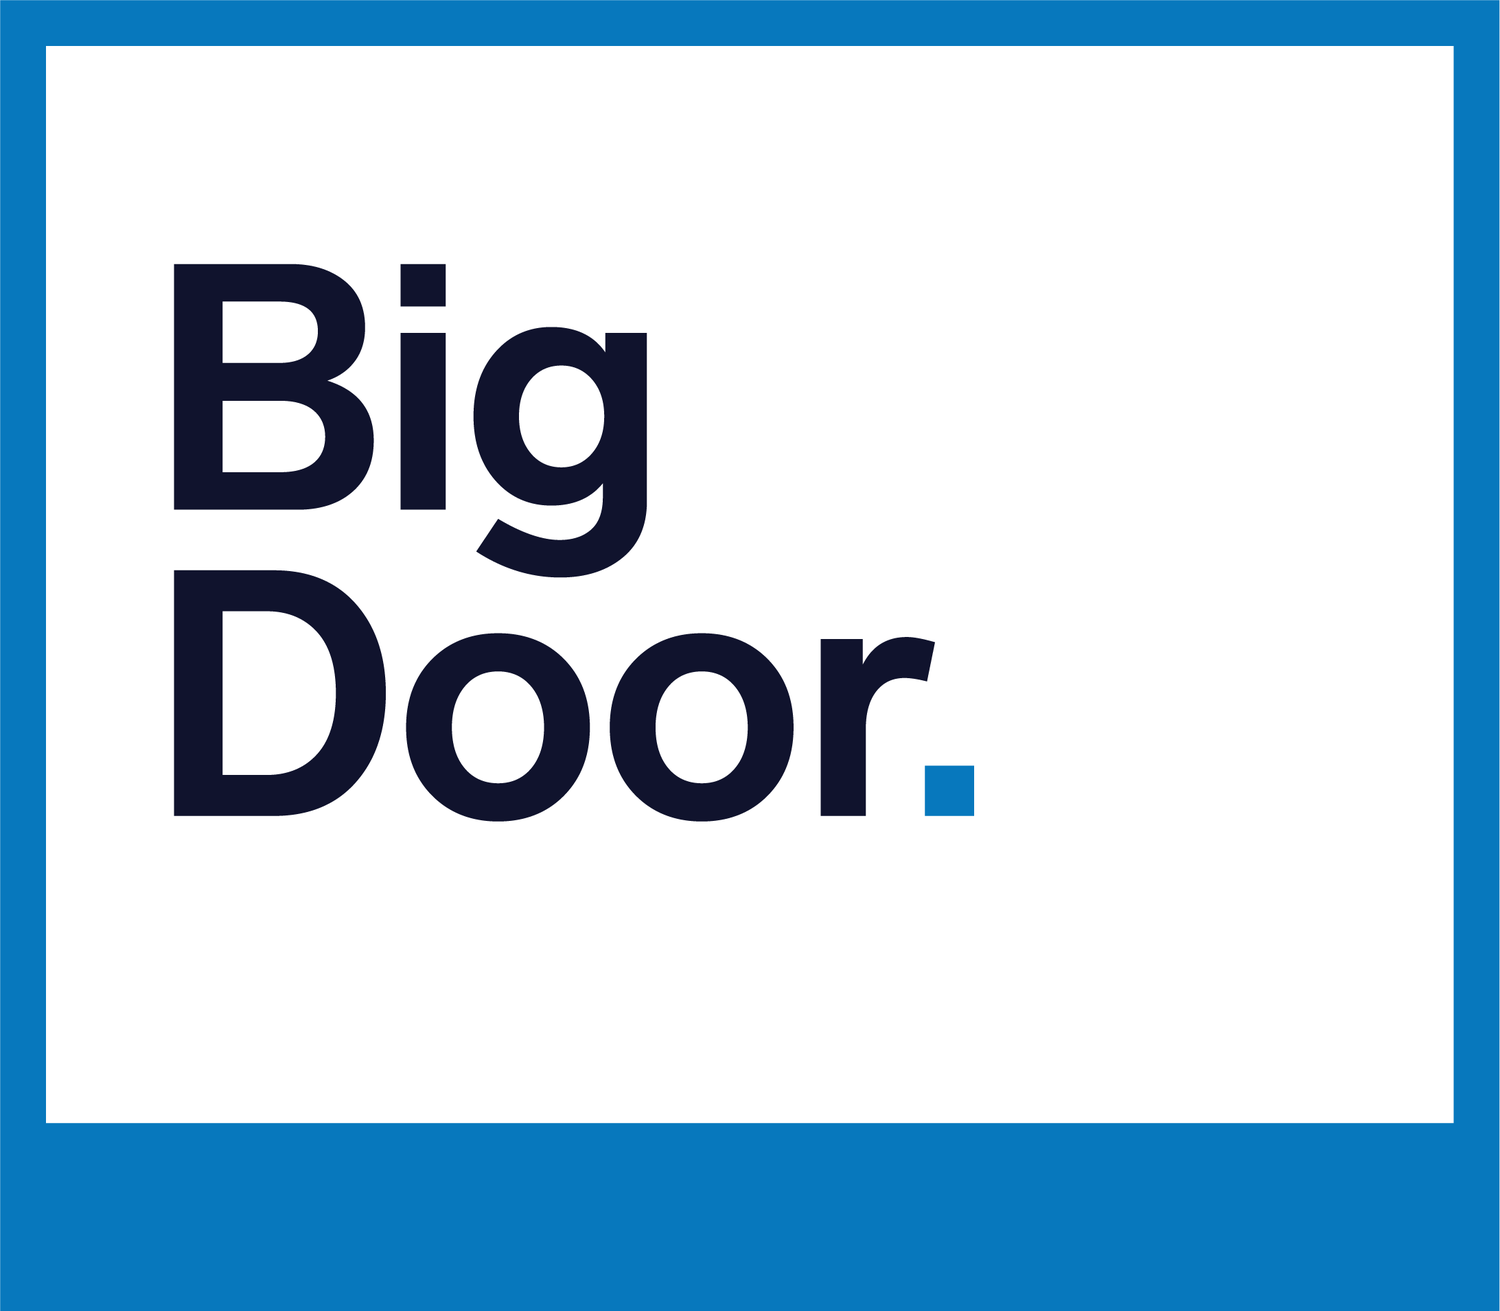 Big Door